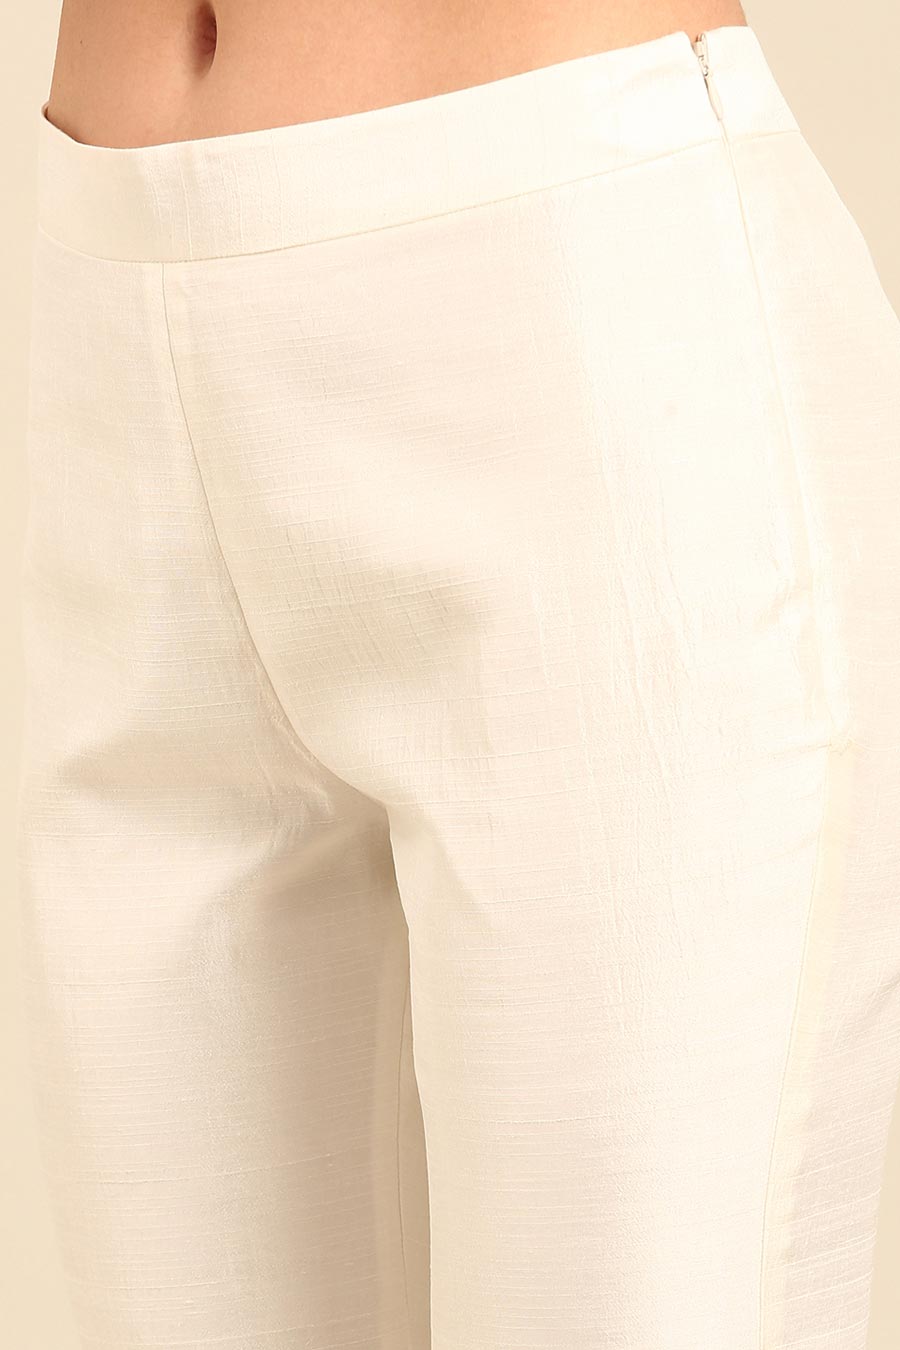 Ivory Embellished Tunic & Pant Co-Ord Set